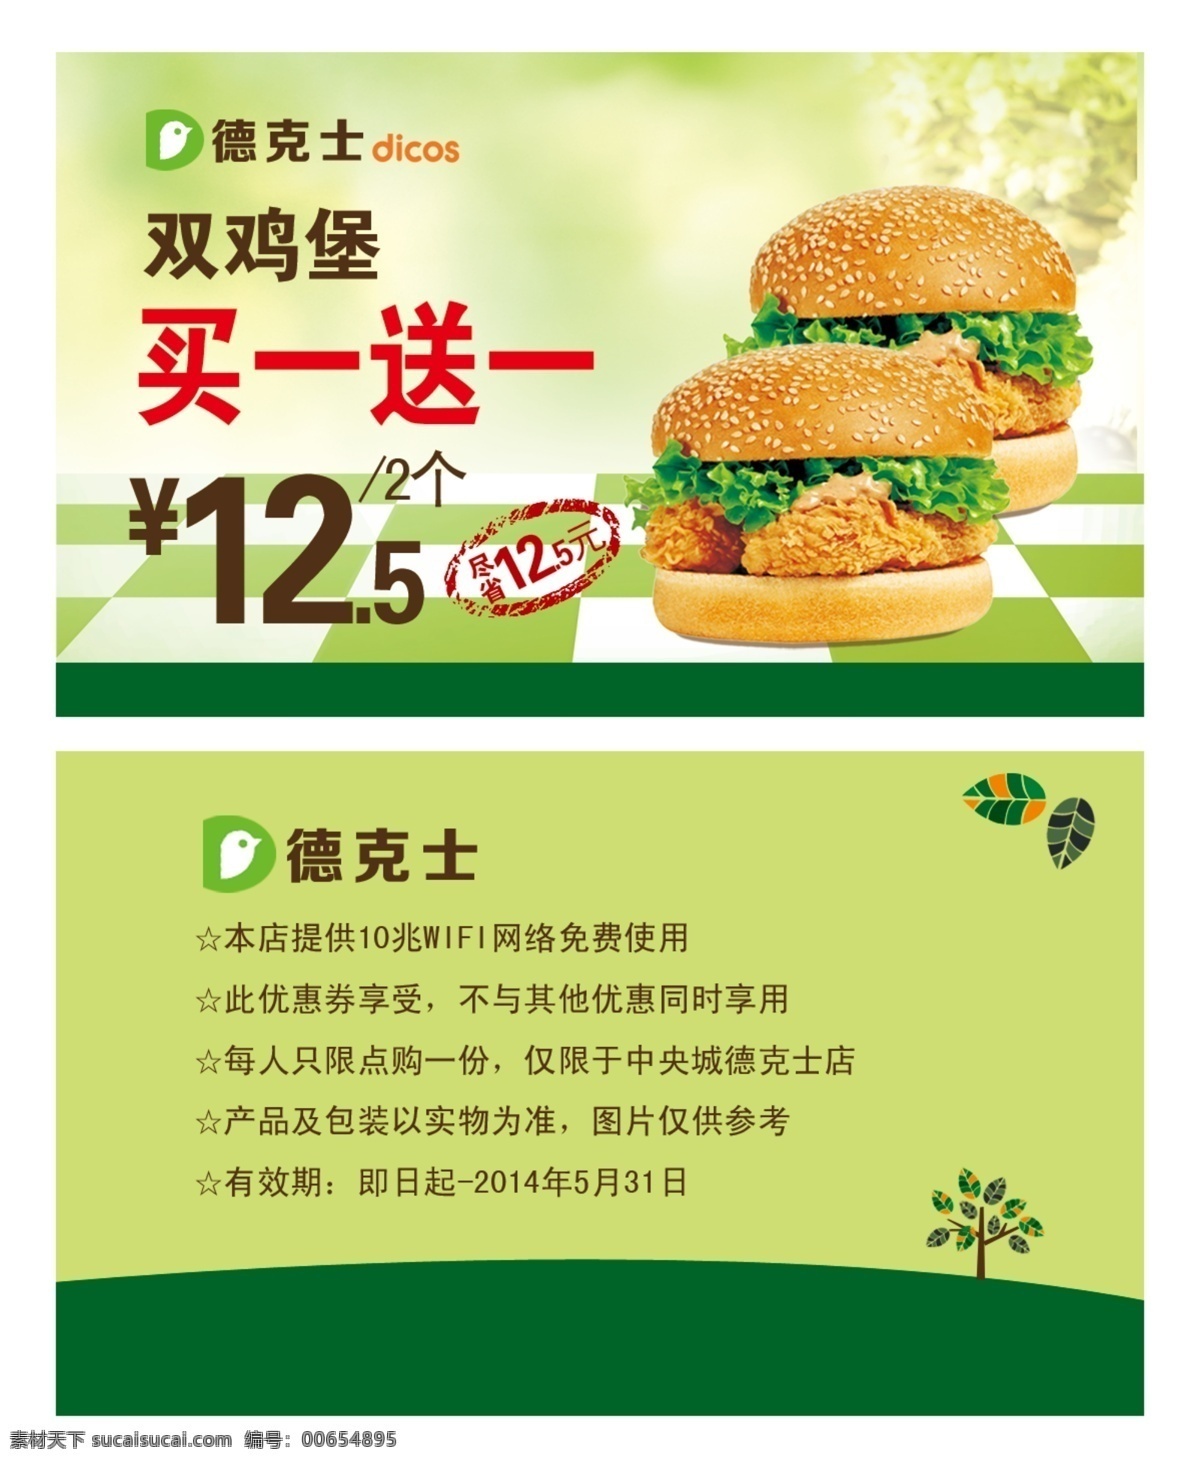 汉堡优惠券 模版下载 优惠券模板 绿色背景 小清新 名片卡片